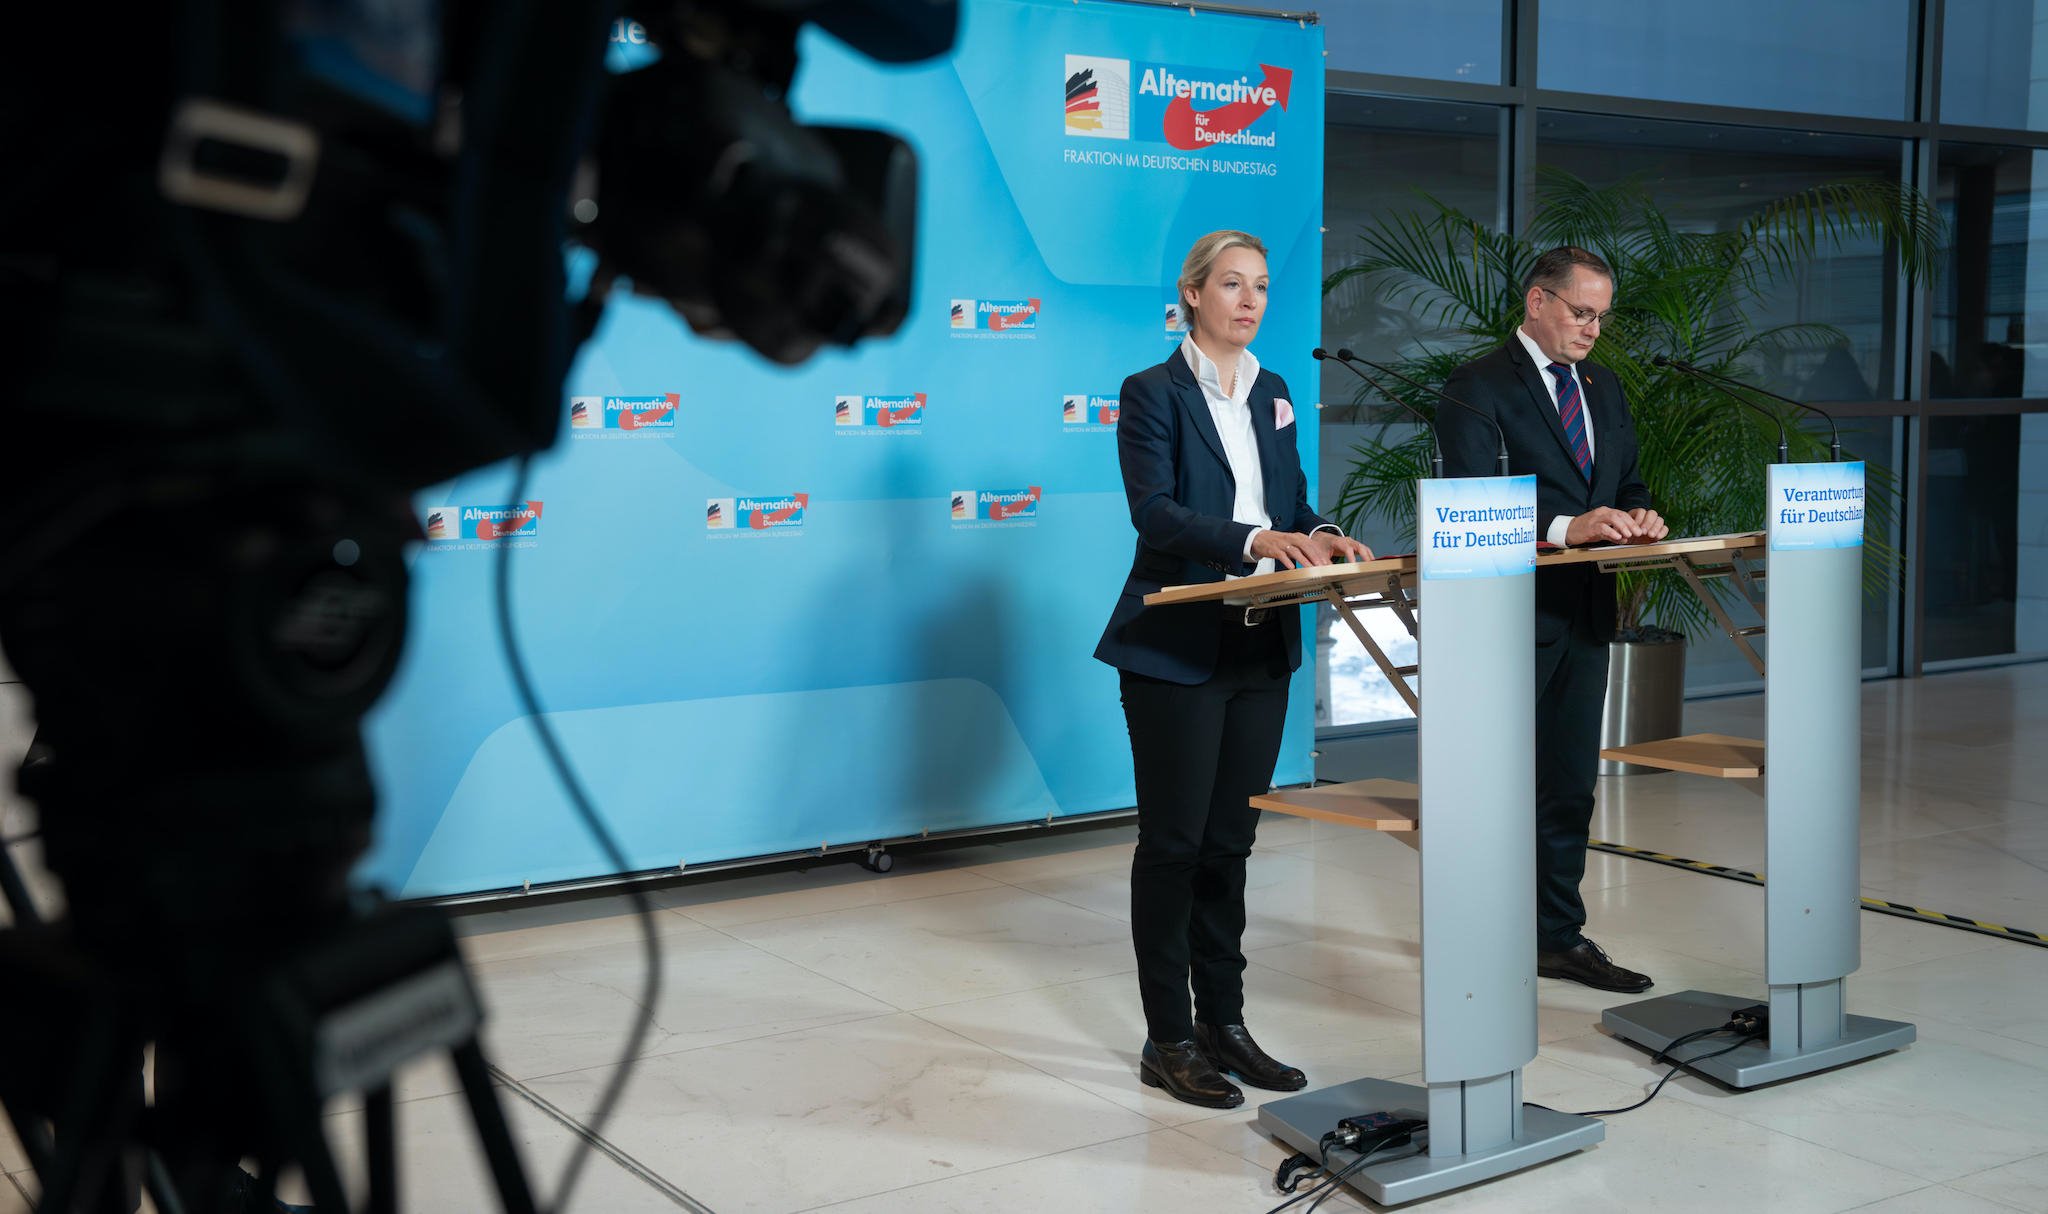 Alice Weidel gemeinsam mit Tino Chrupalla bei ihrem Statement im Vorfeld der Fraktionssitzung der AfD Bundestagsfraktion